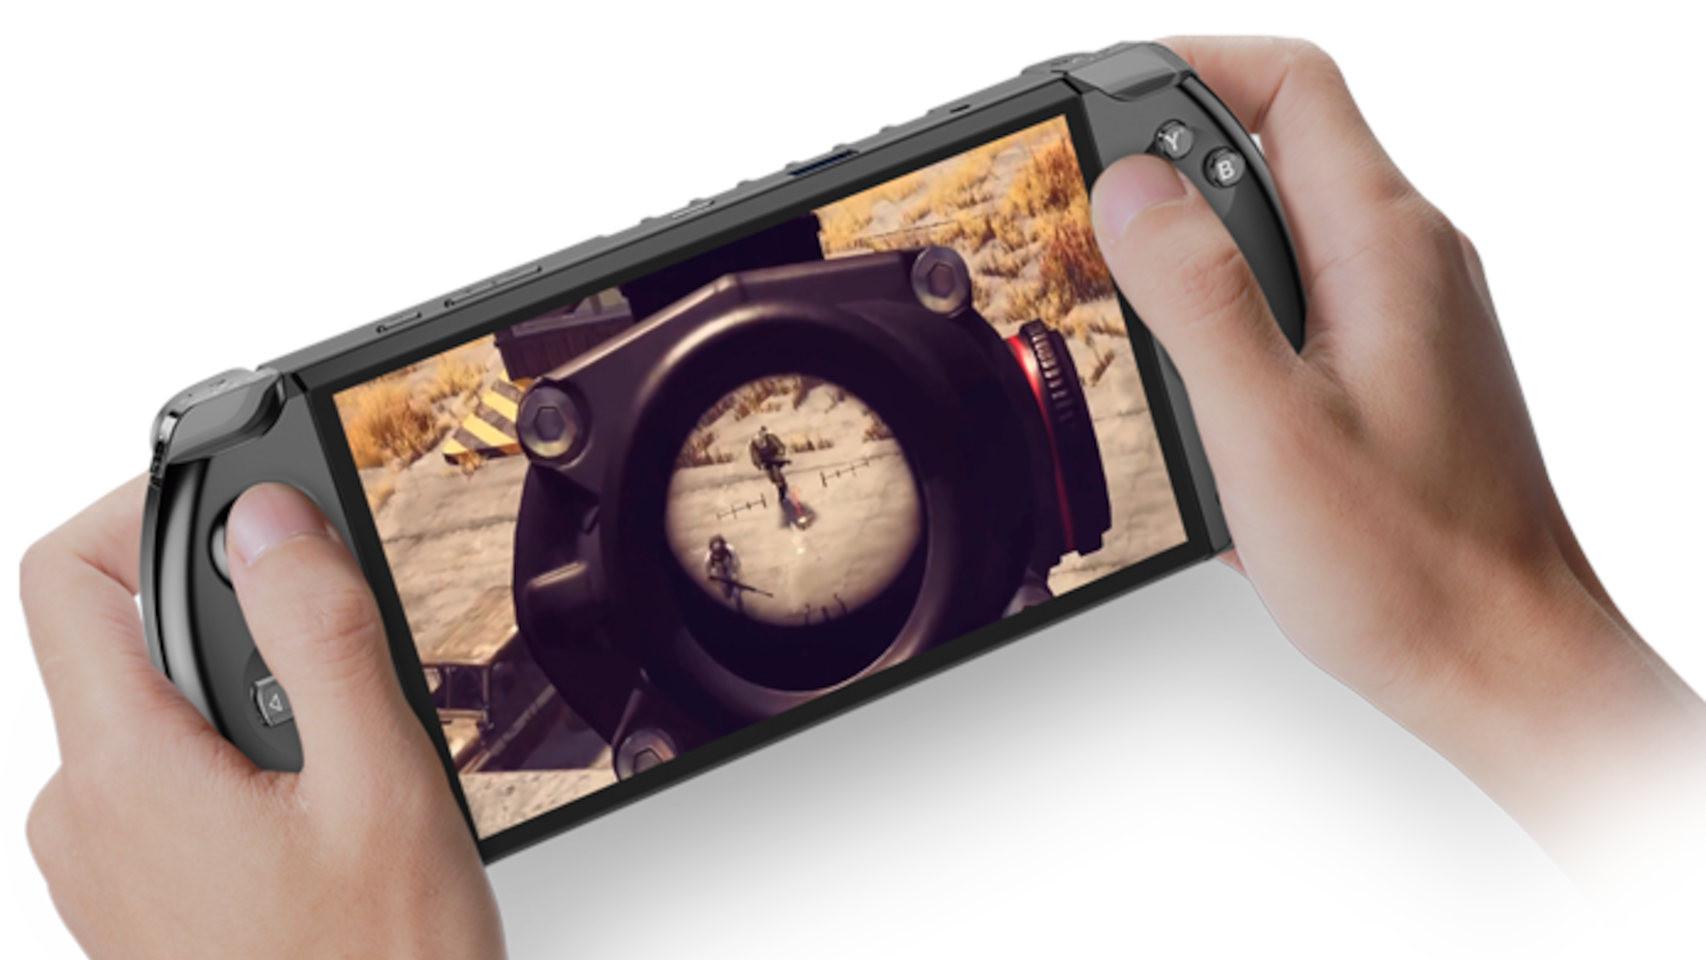 La GPD Win 4 tiene un diseño inspirado en la PS Vita de Sony